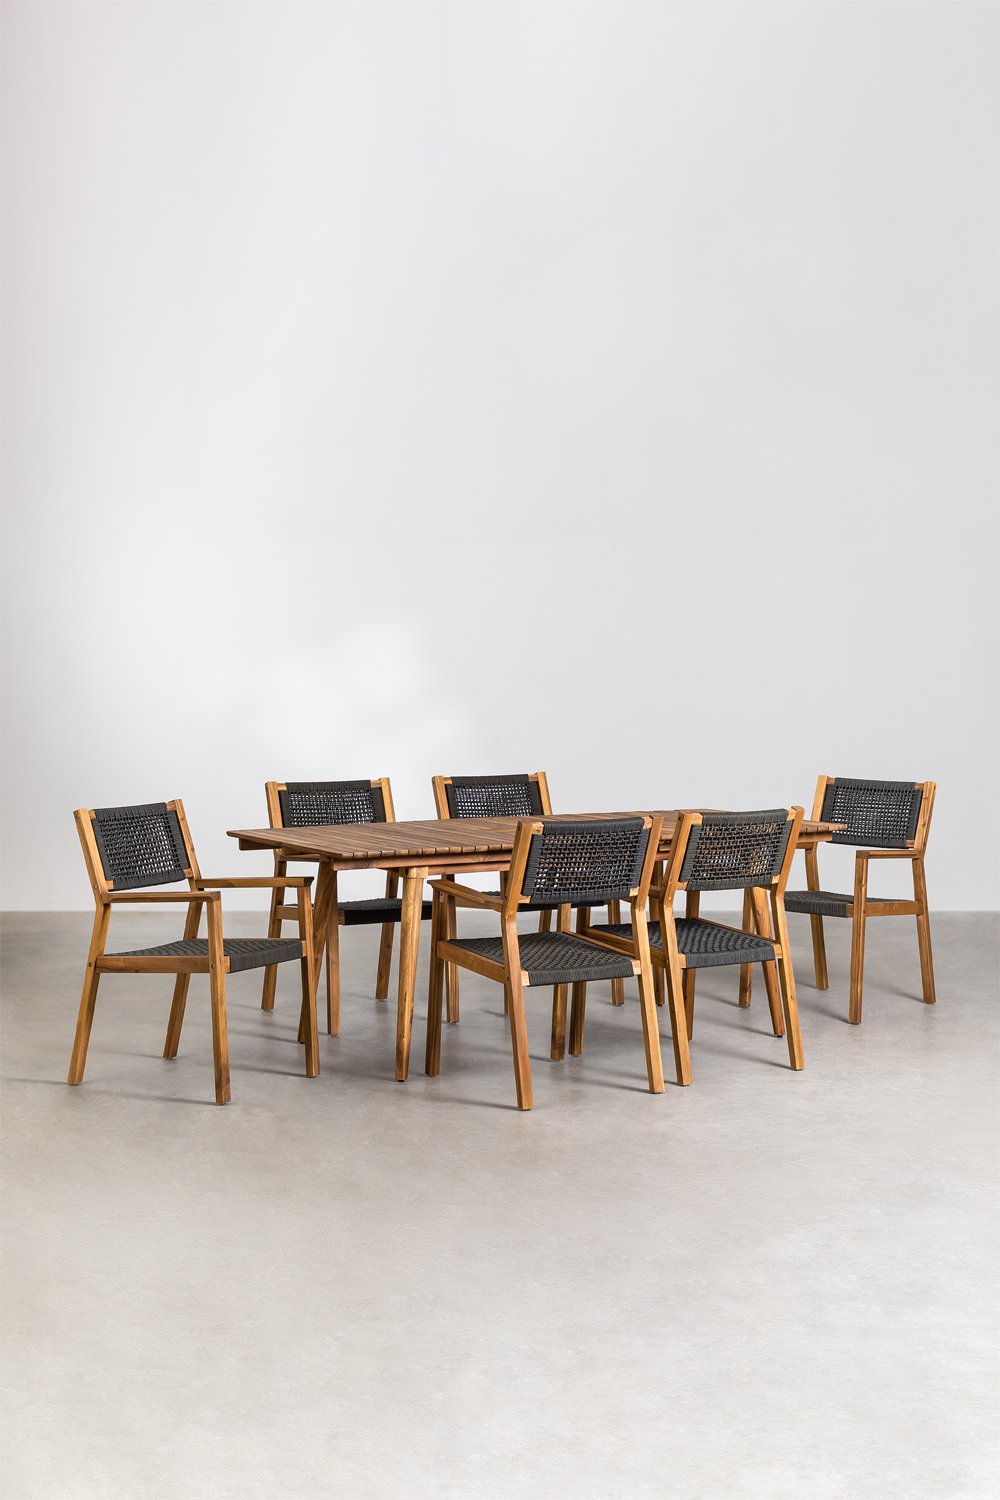 Set tavolo allungabile in legno (90-150x90 cm) Naele e 6 sedie da pranzo  Barker - SKLUM